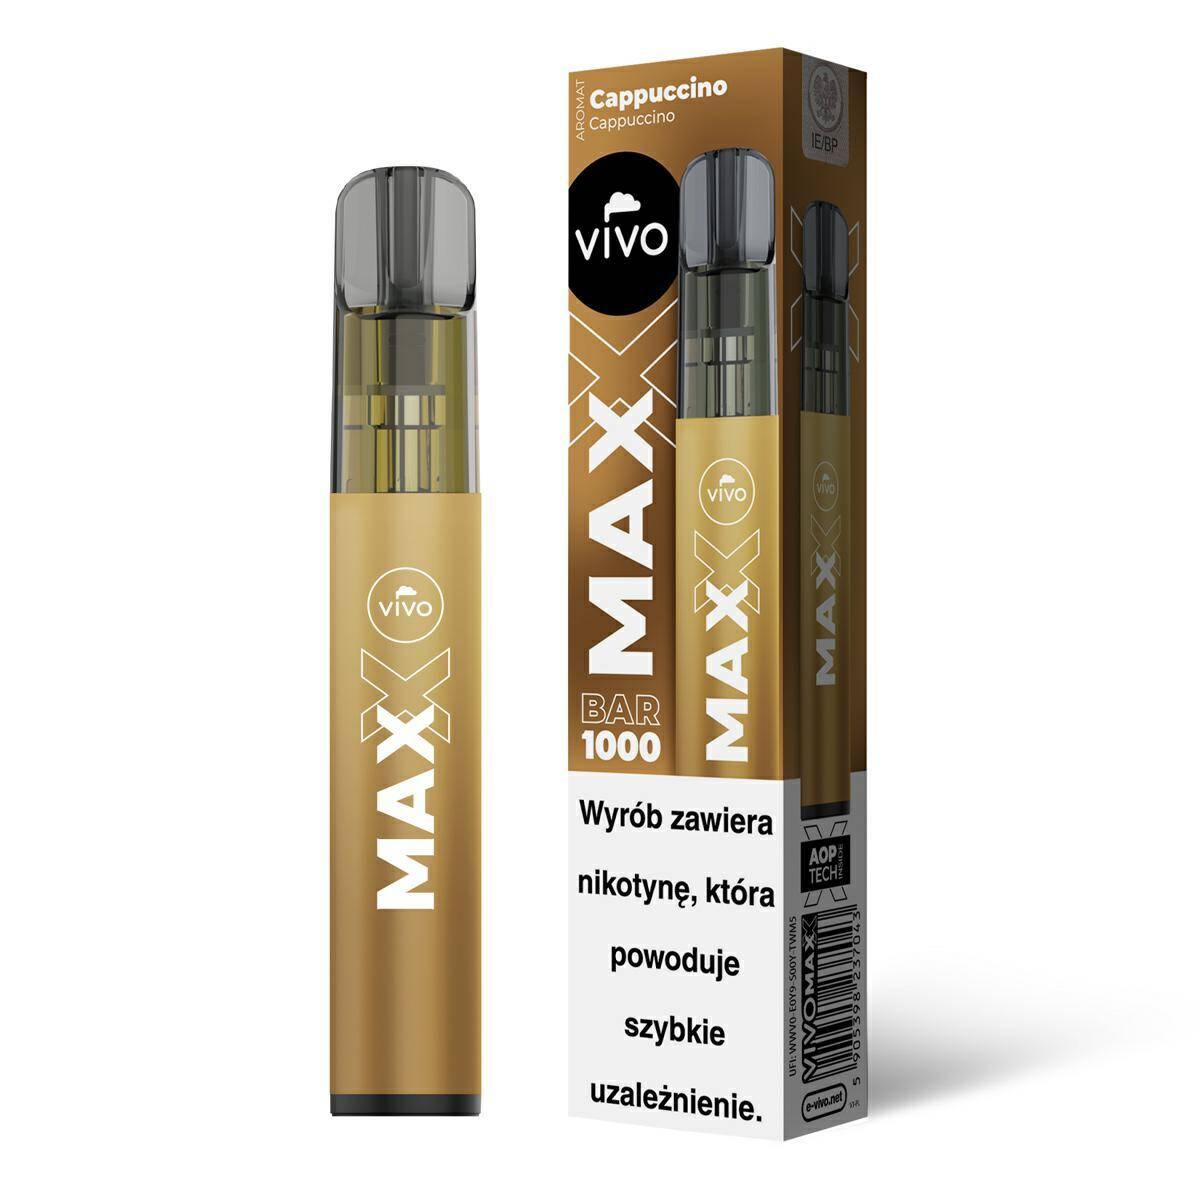 Disposable e-cigarette VIVO MAXX - Cappuccino 20mg